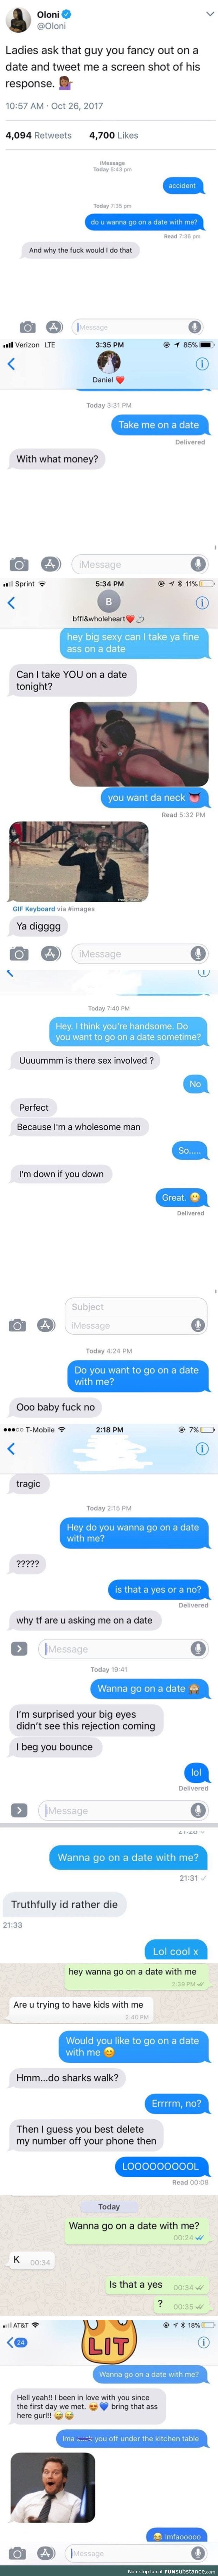 Wanna Go on a Date